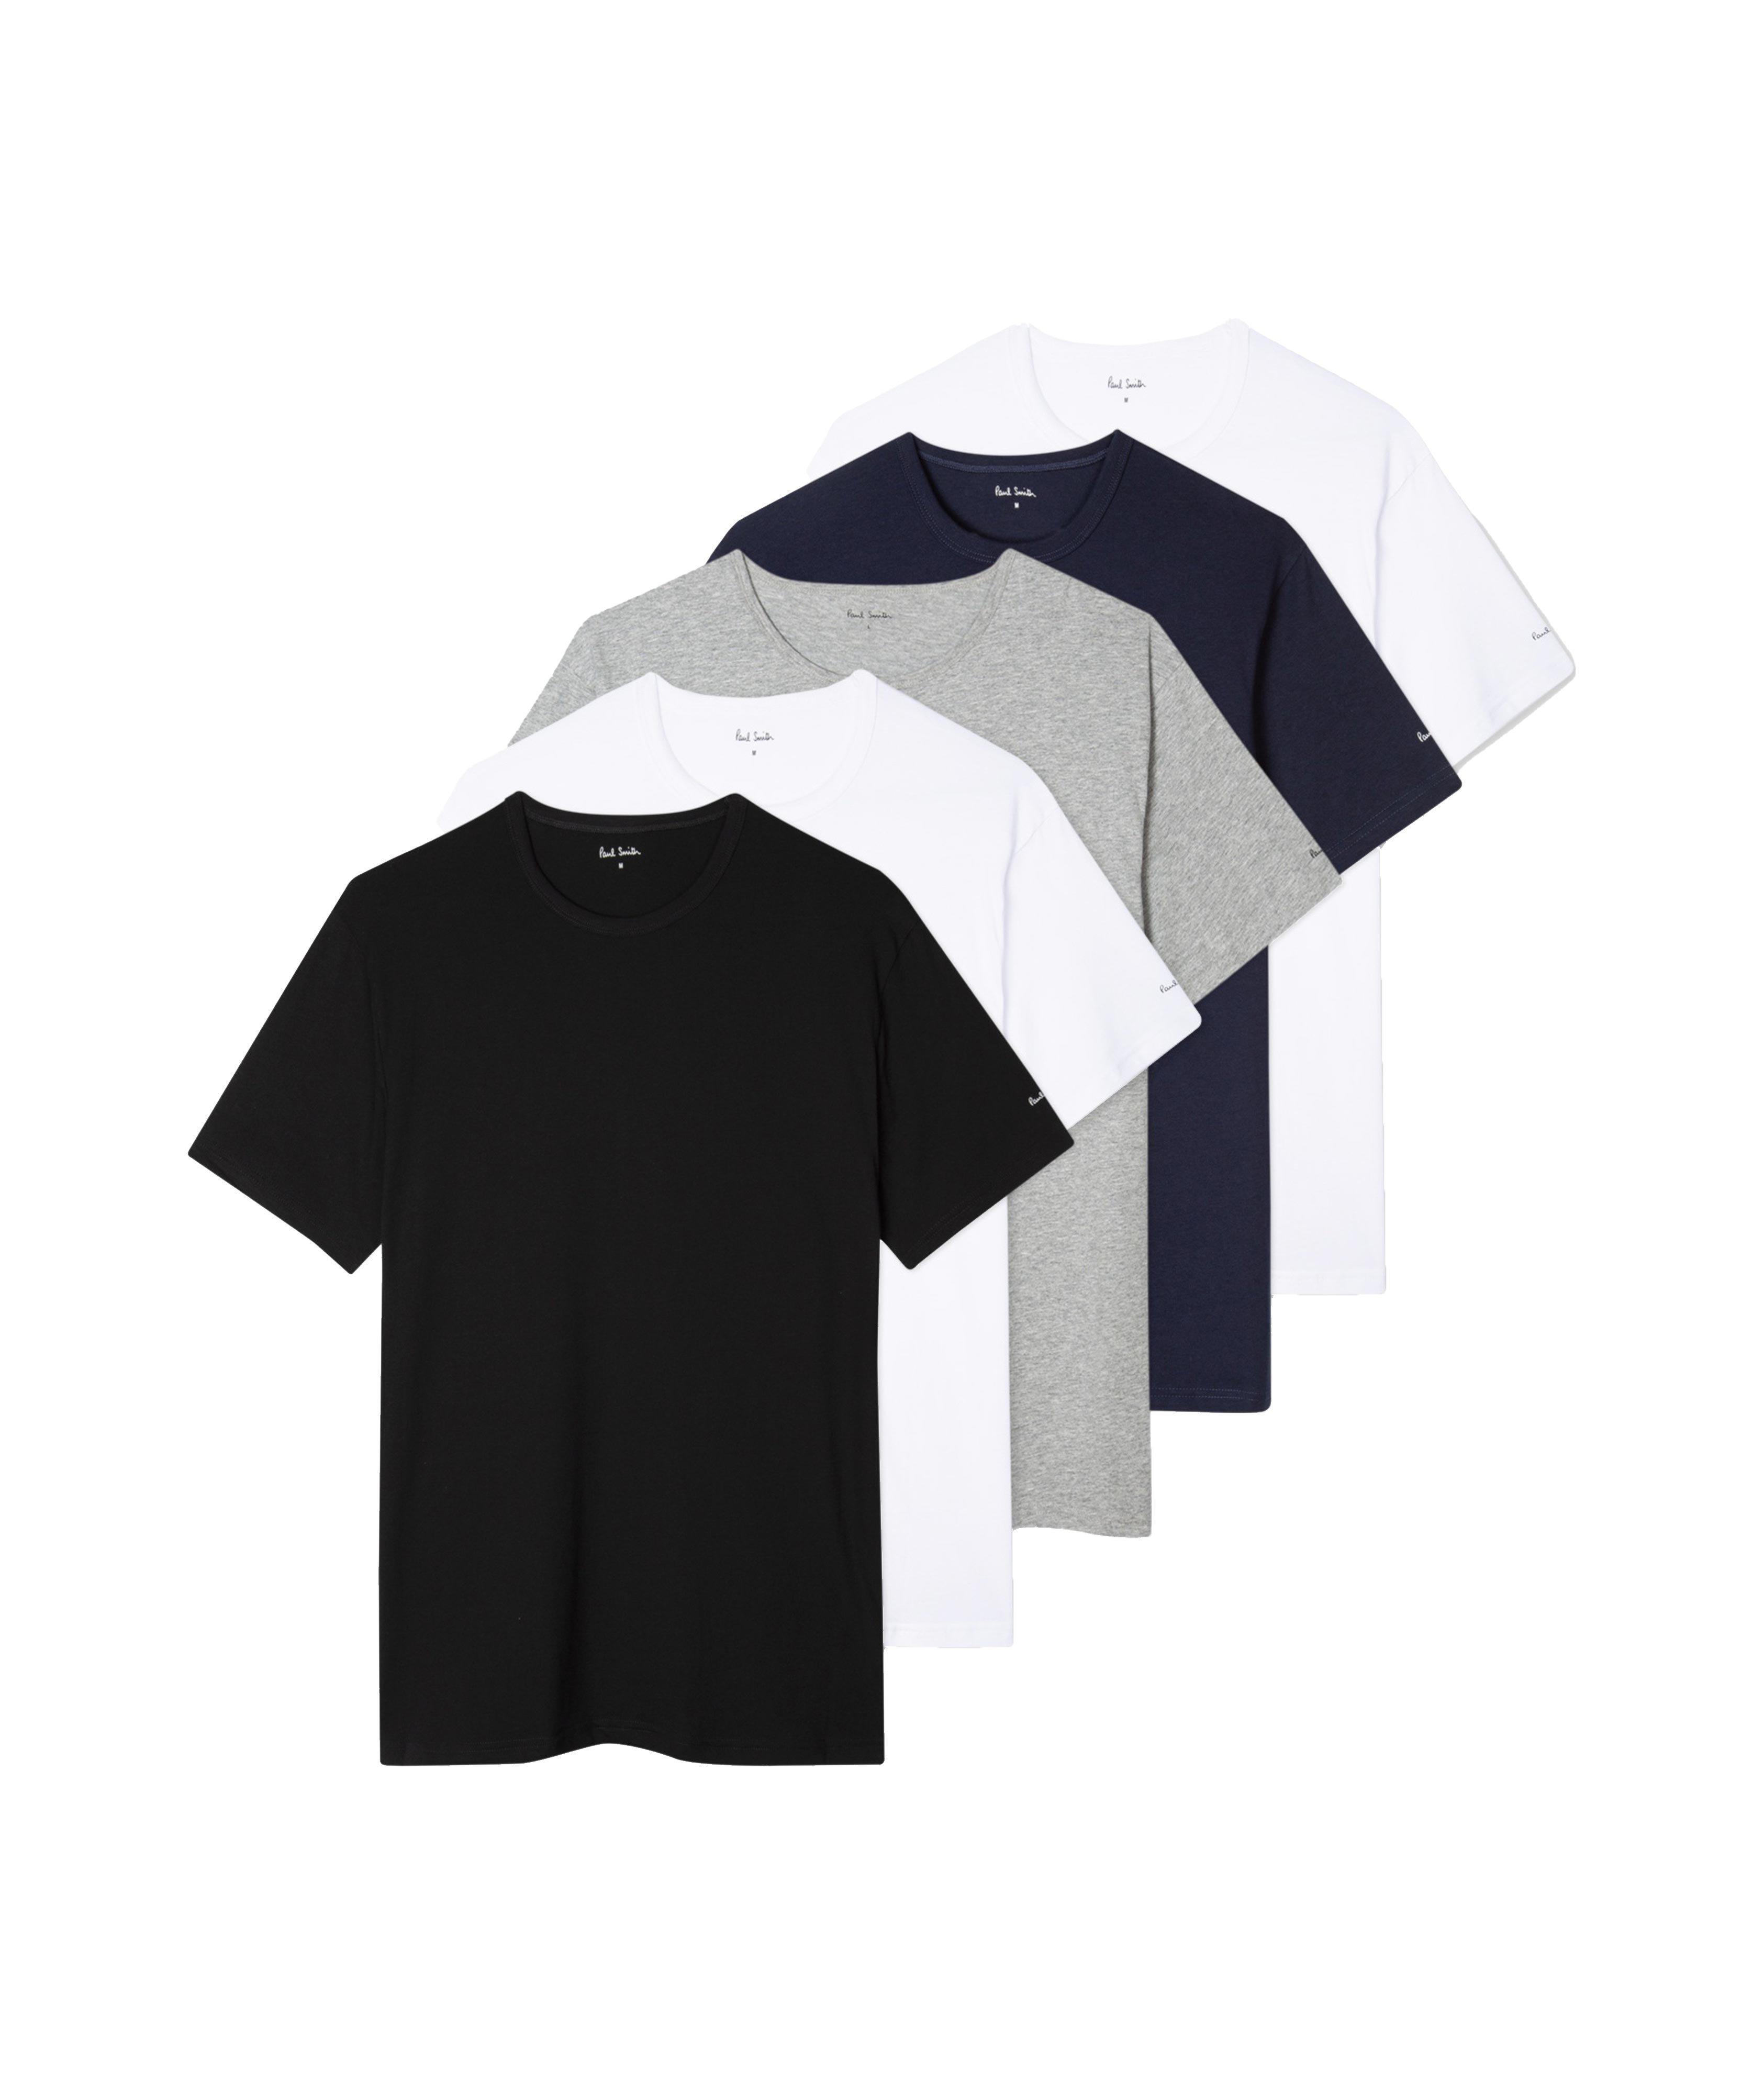 Ensemble de cinq t-shirts en coton à encolure ronde image 0